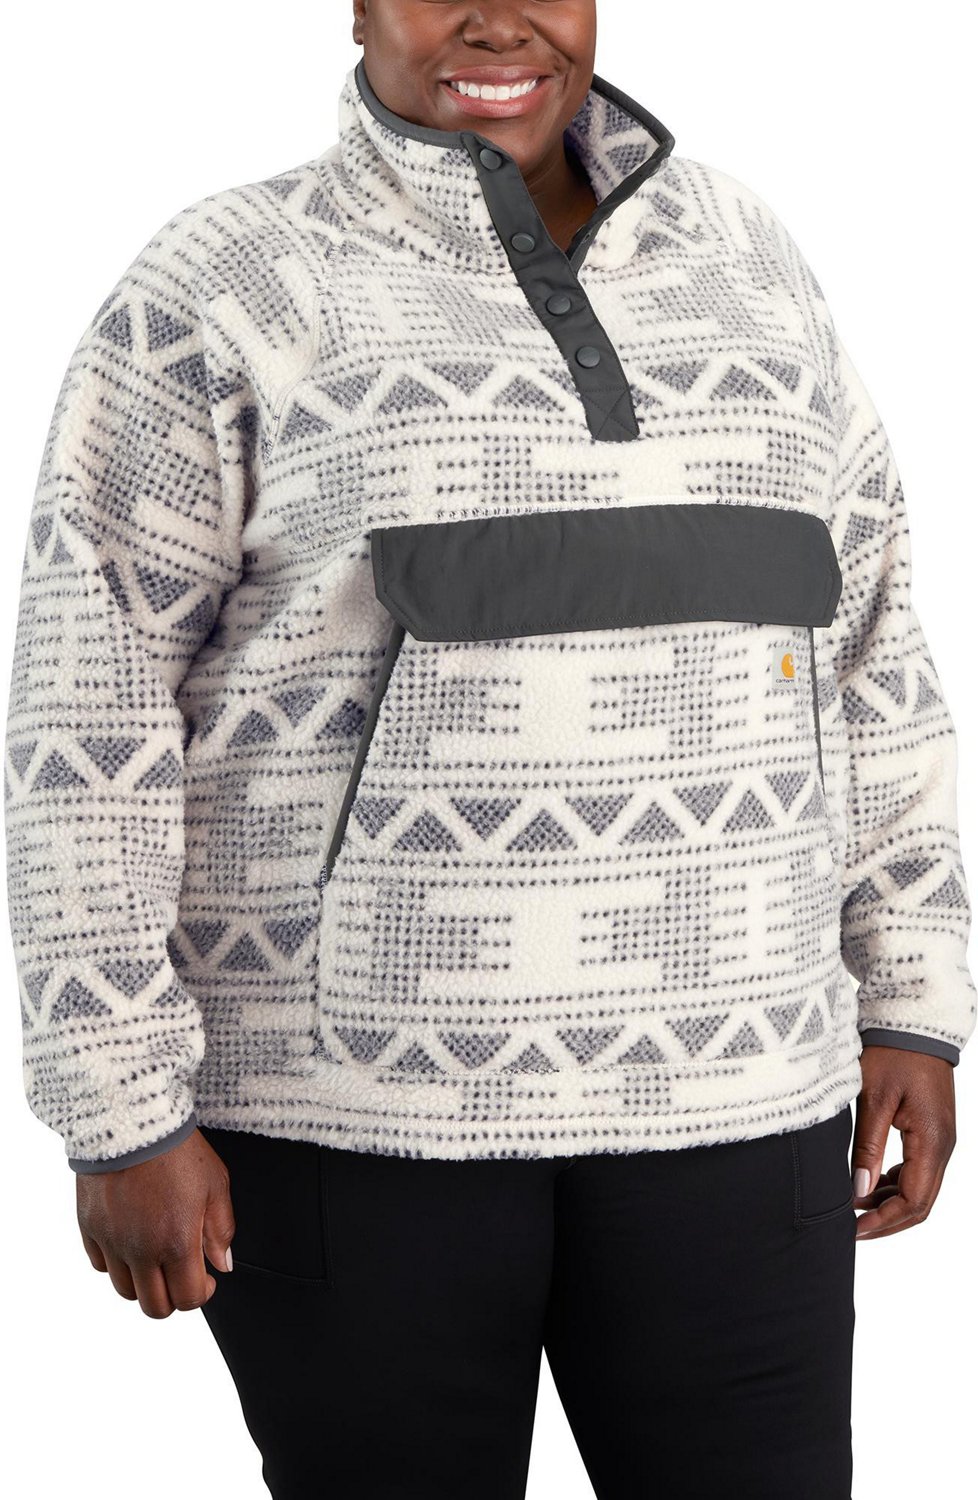 Carhartt Women's Fleece Pullover Sweatshirt | Academy